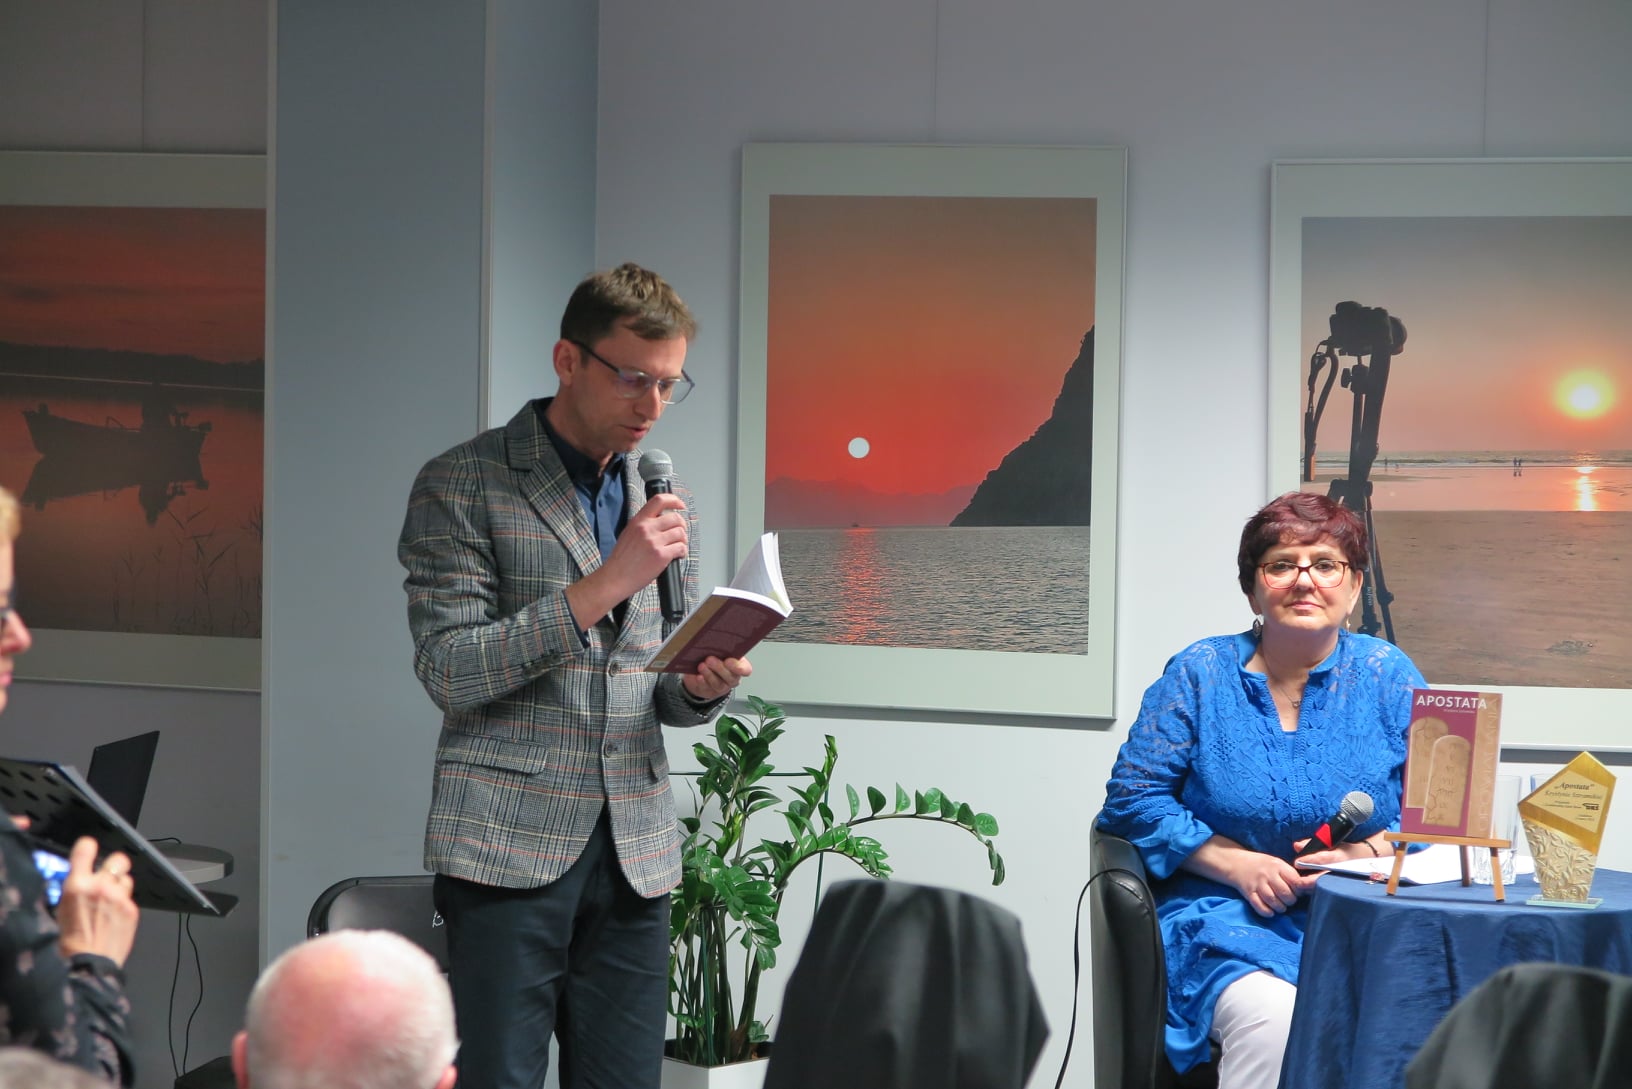 Piotr Kozikowski czyta fragment książki, Krystyny Sztramskiej która siedzi po prawej stronie sceny